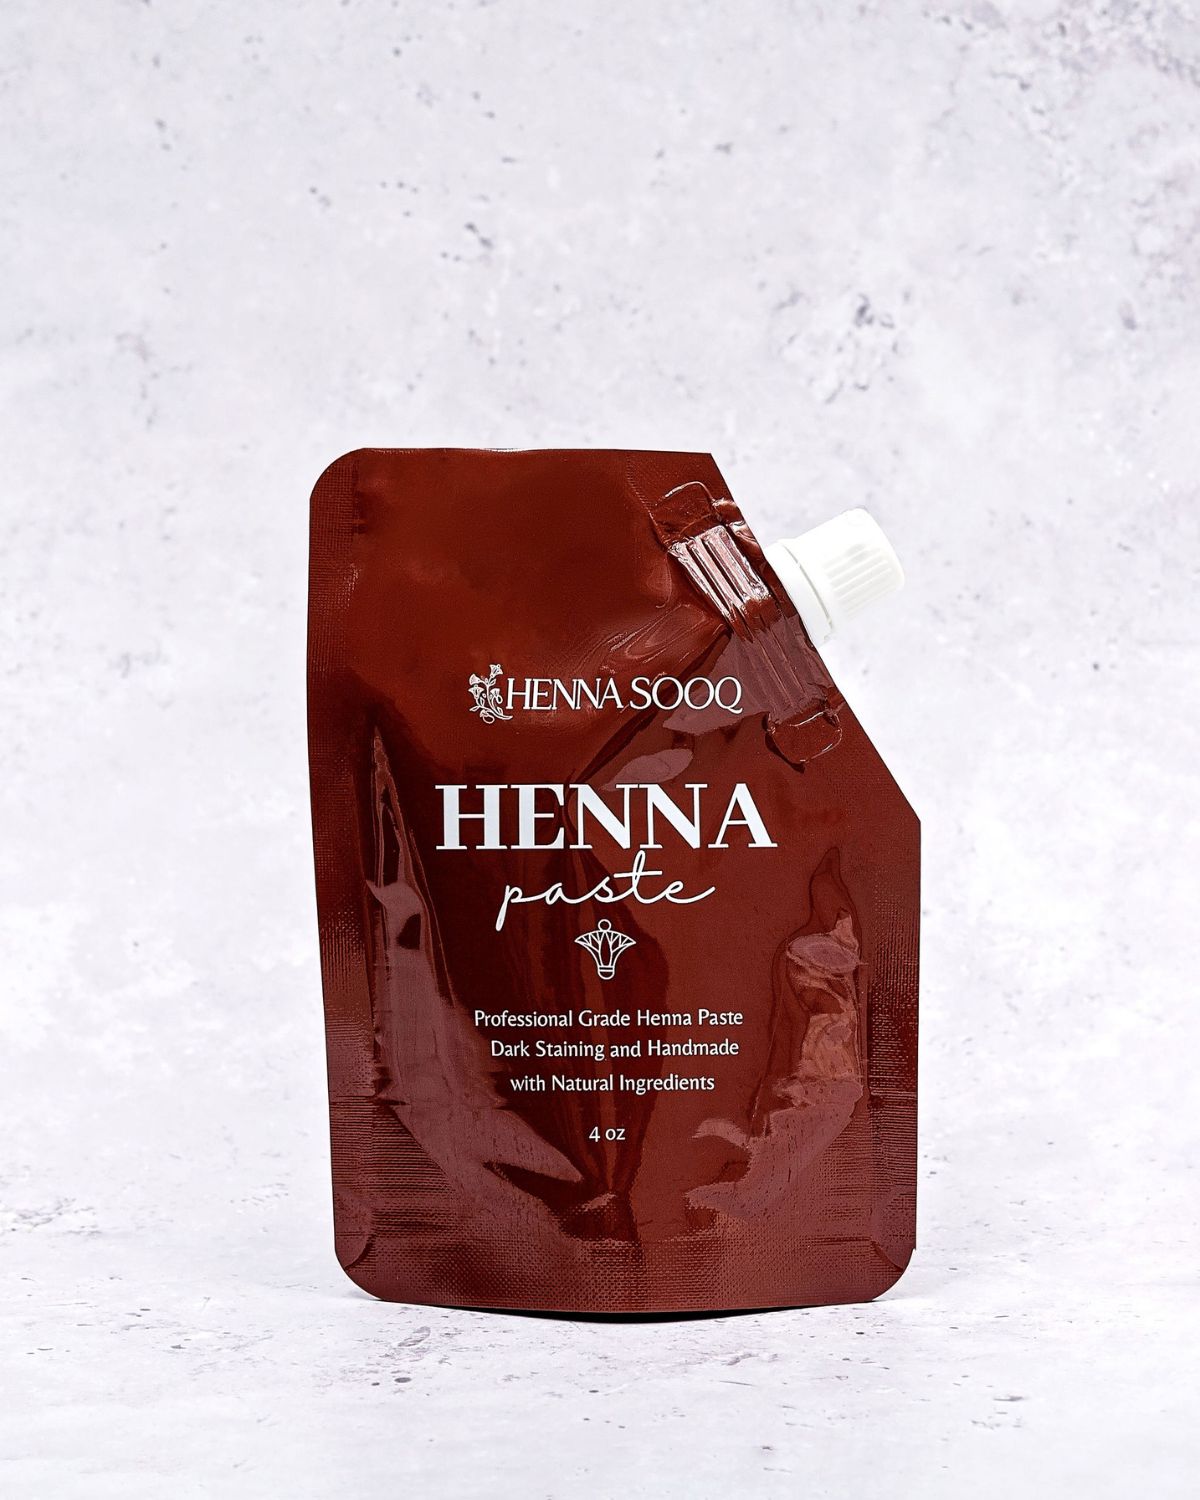 Fresh Henna Body Art Paste - Henna Sooq